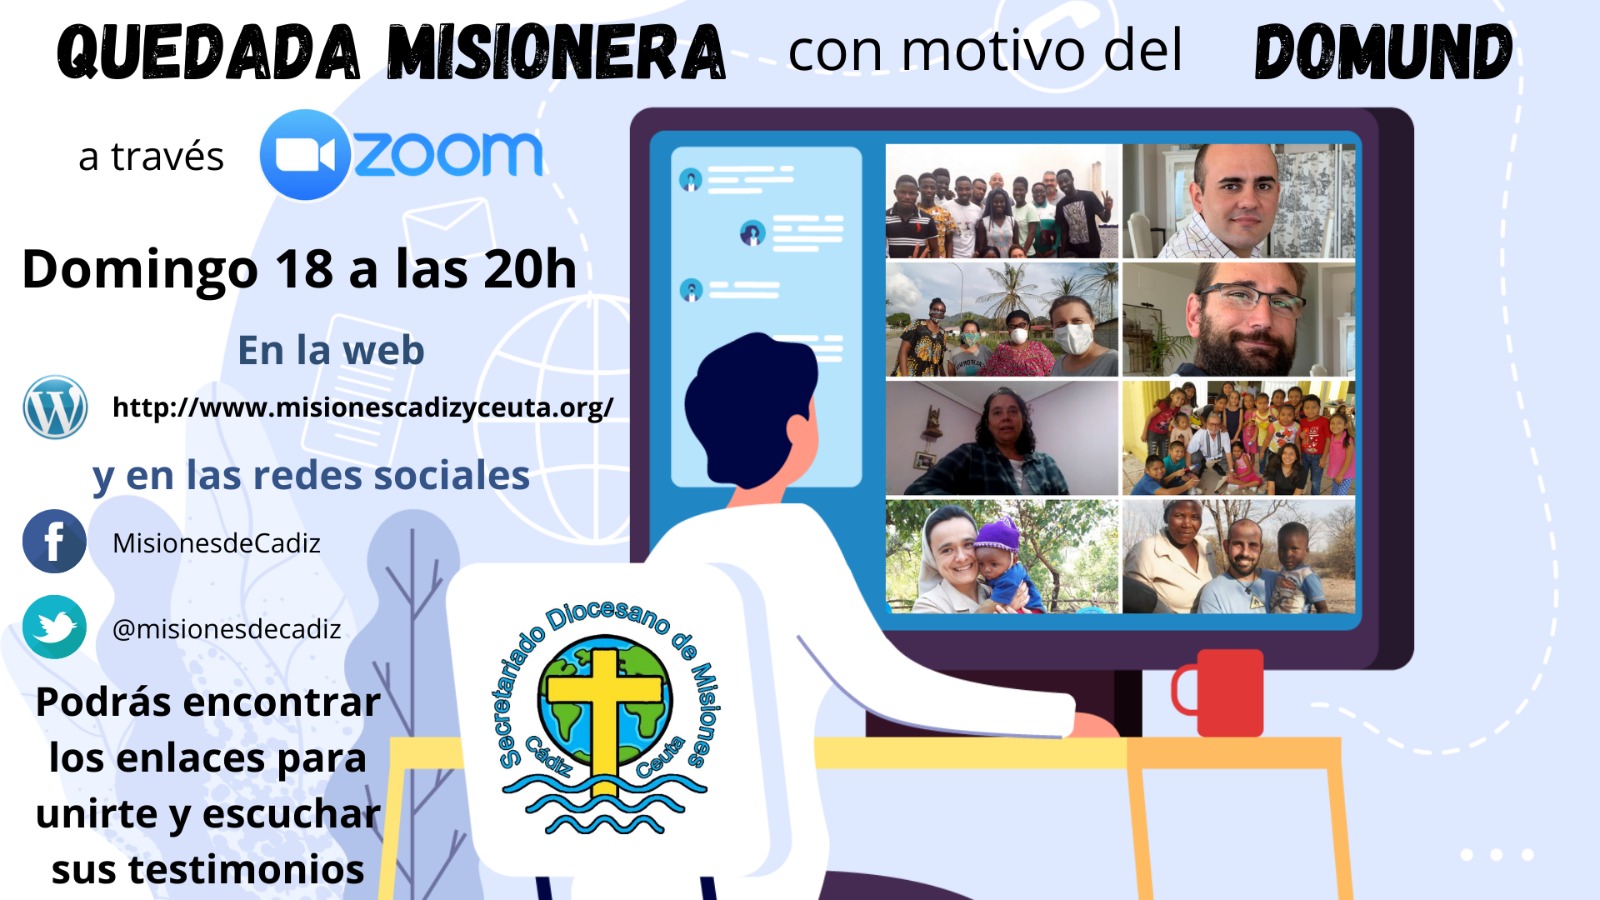 Convocatoria de quedada con los misioneros y misioneras de la diócesis de Cádiz y Ceuta, el domingo 18 de Octubre a las 20'00hs.